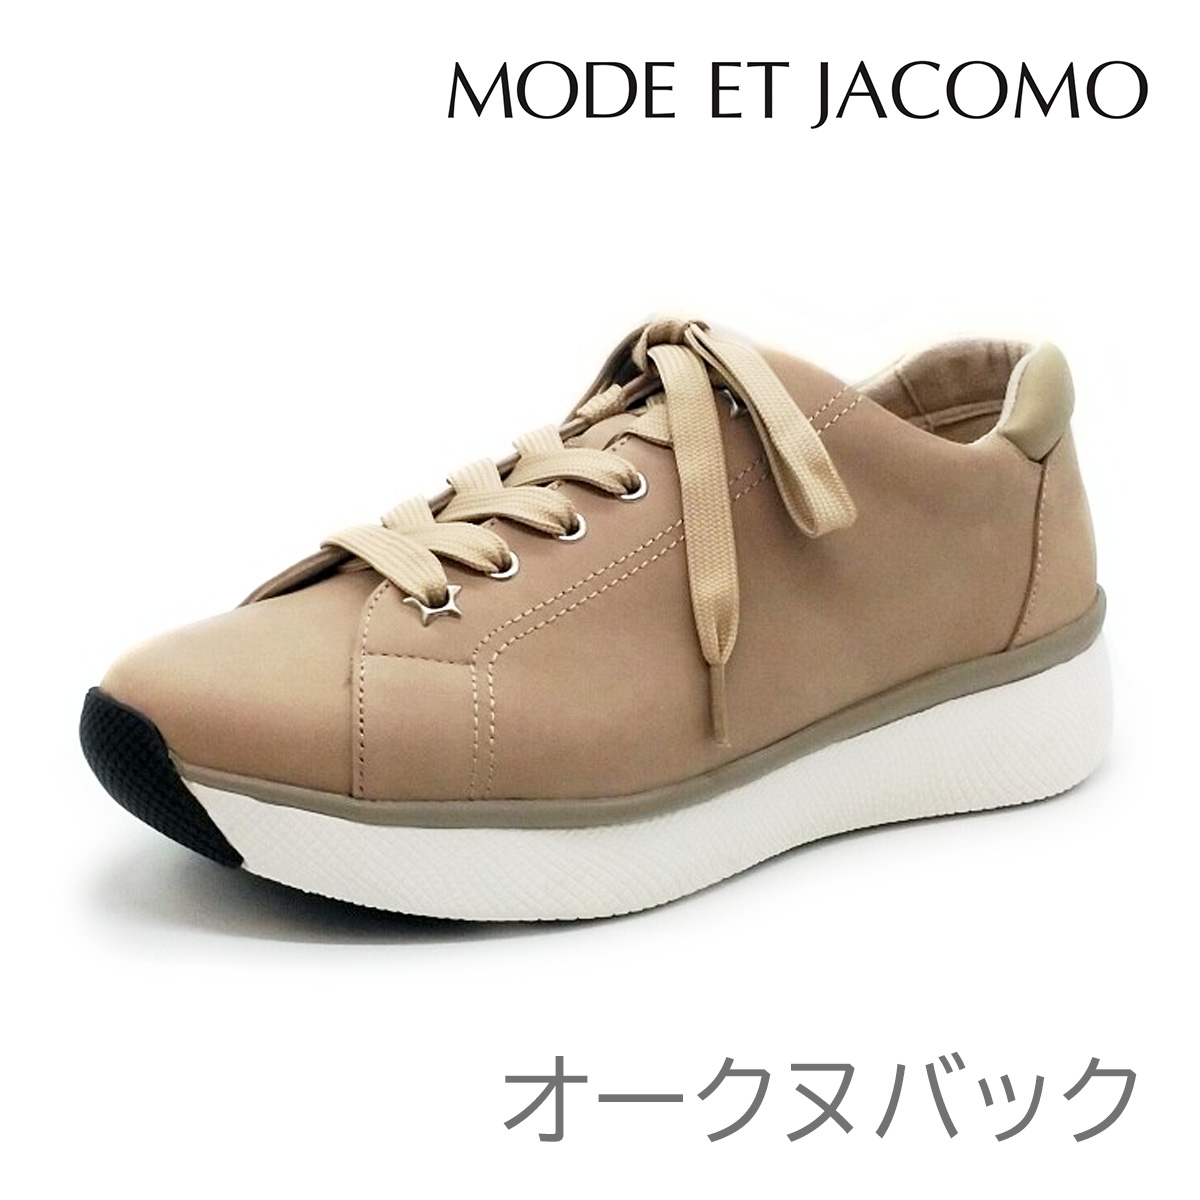 生産停止 MODE ET JACOMO モード エ ジャコモ レディース レザー スニーカー MJAN 91133 厚底 靴